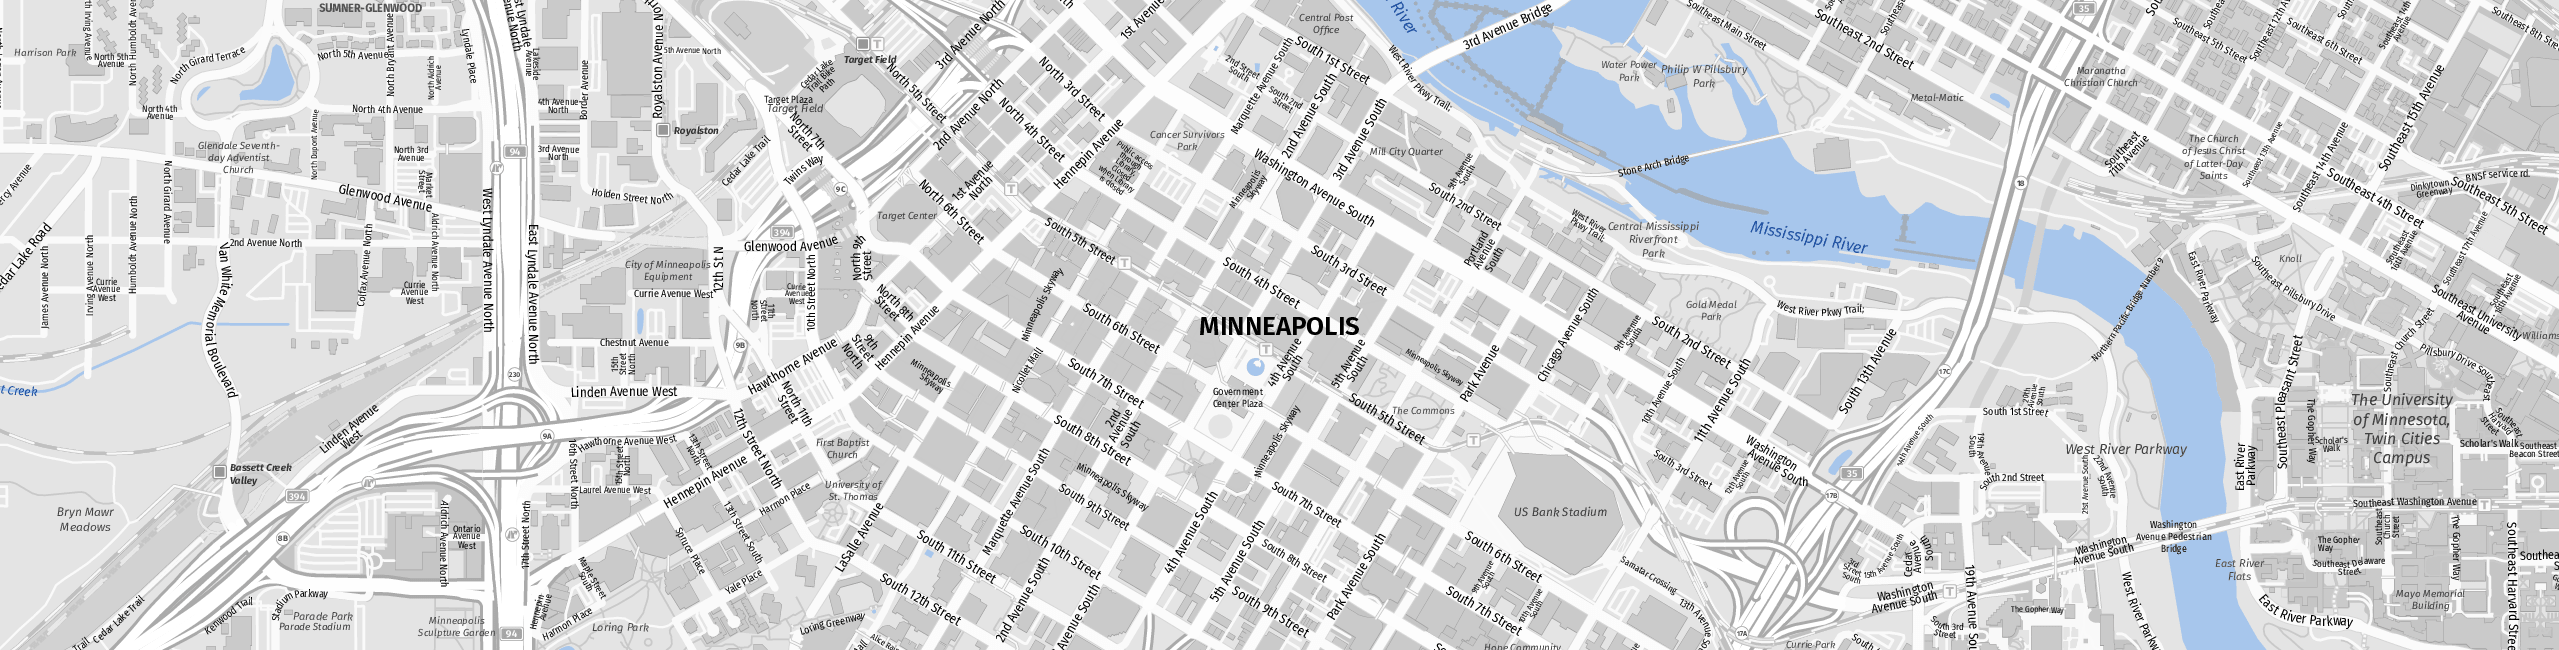 Stadtplan Minneapolis zum Downloaden.